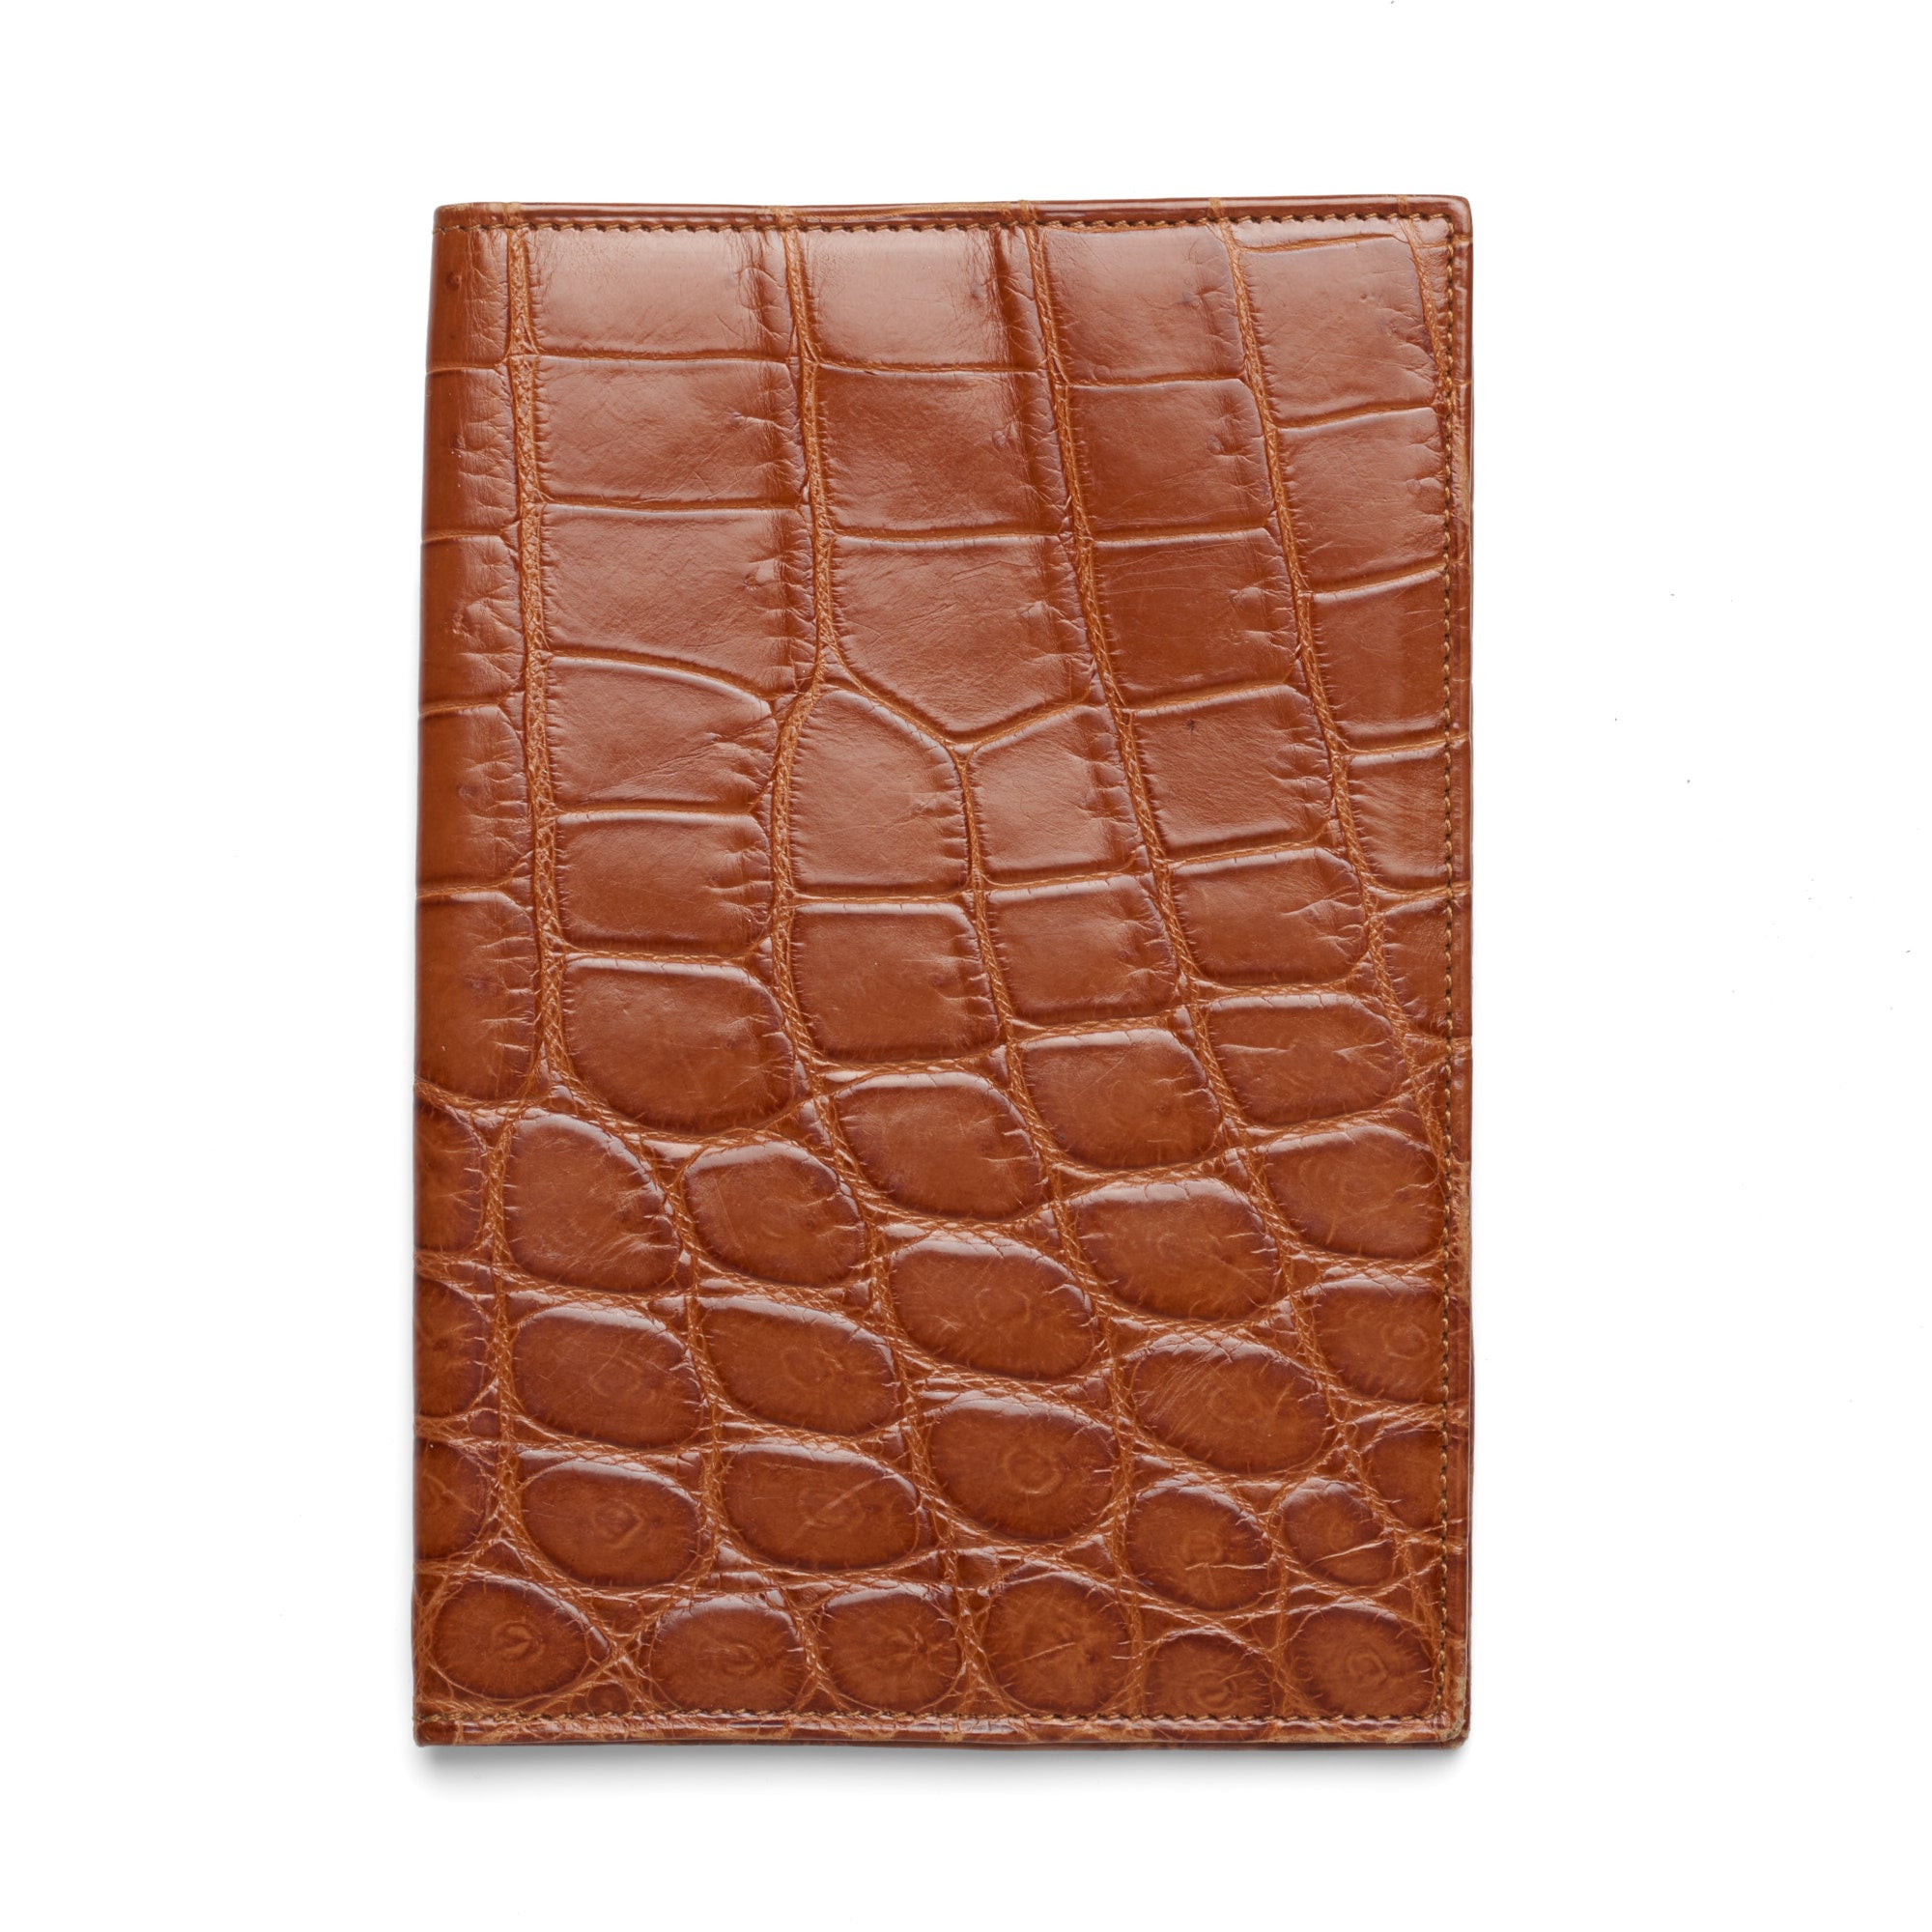 Via La Moda Brown Crocodile Leather Passport Holder Cover